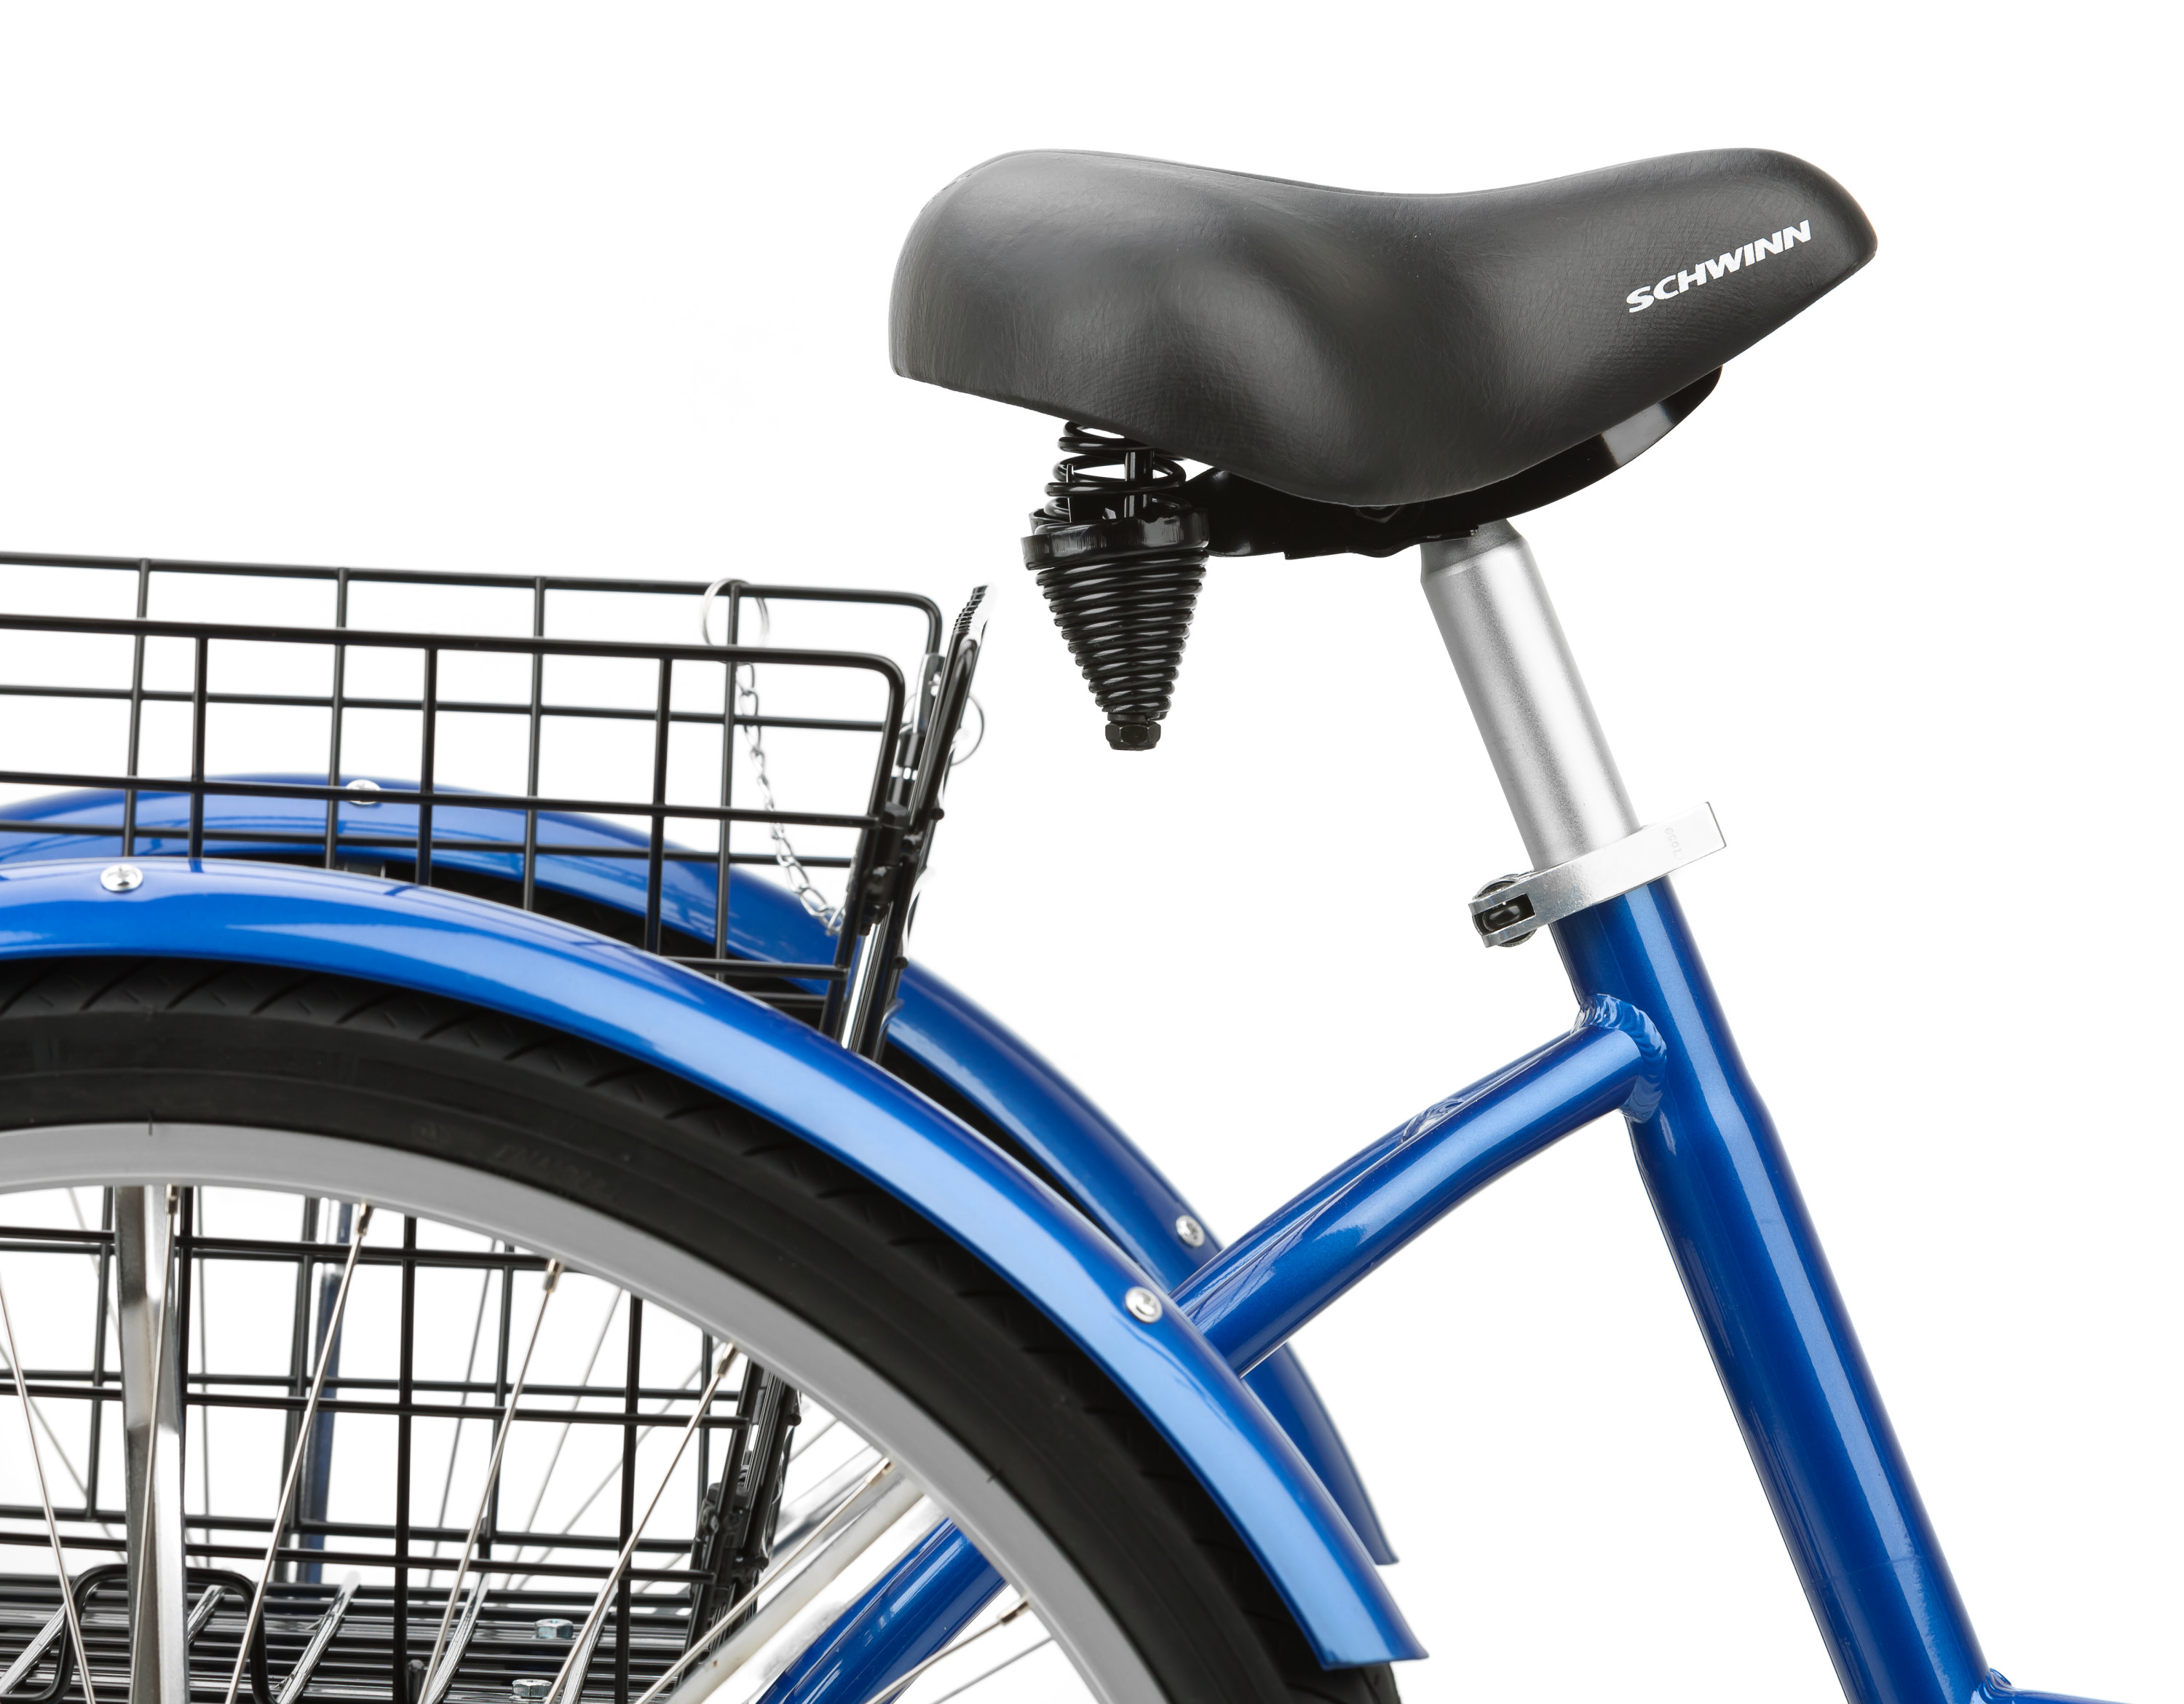 Schwinn Meridian Adult Tricycle, 26-inch wheels, rear storage basket, Blue - image 3 of 6